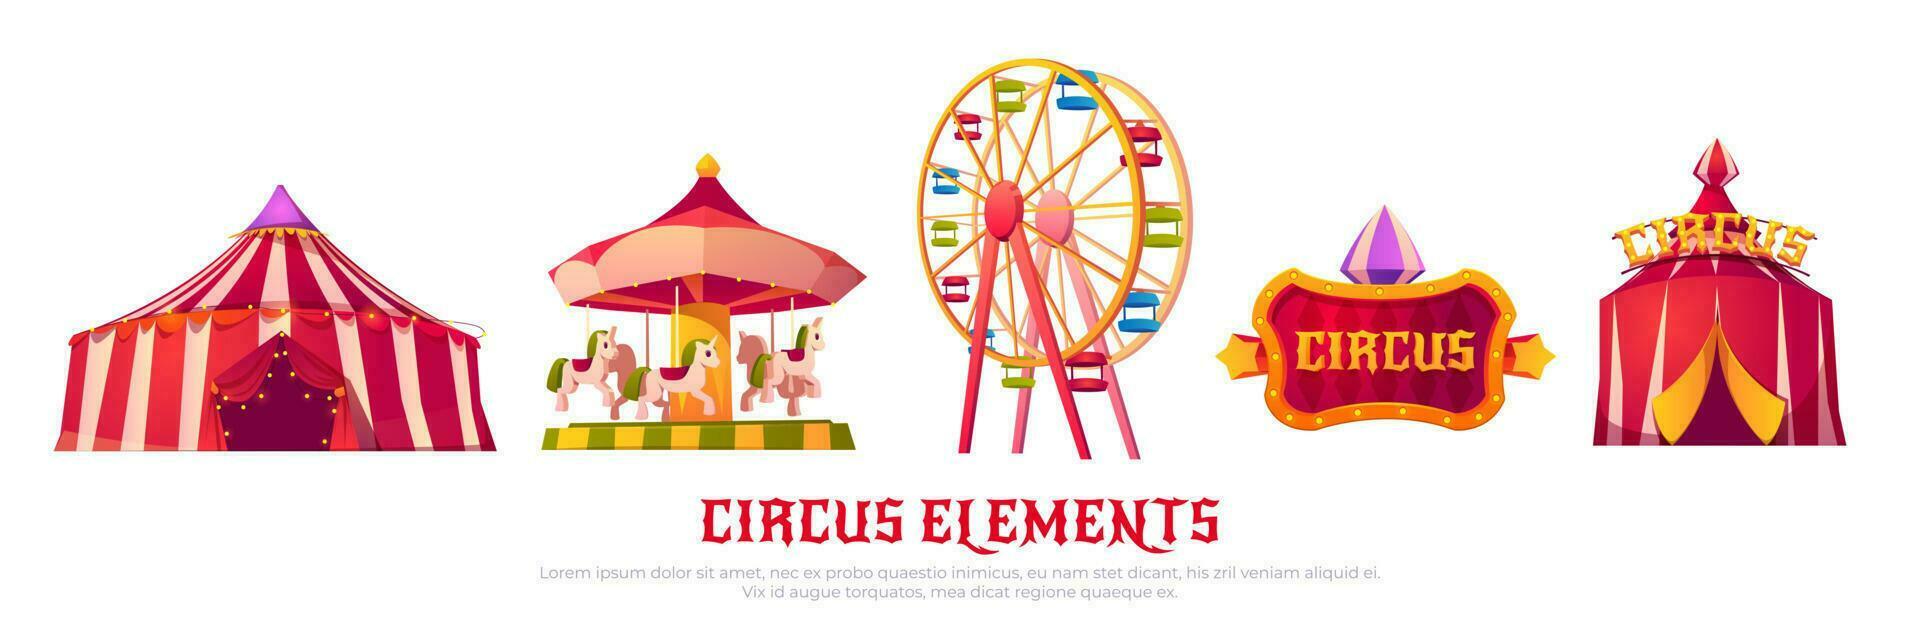 circo ícones com carrossel, ferris roda e barraca vetor